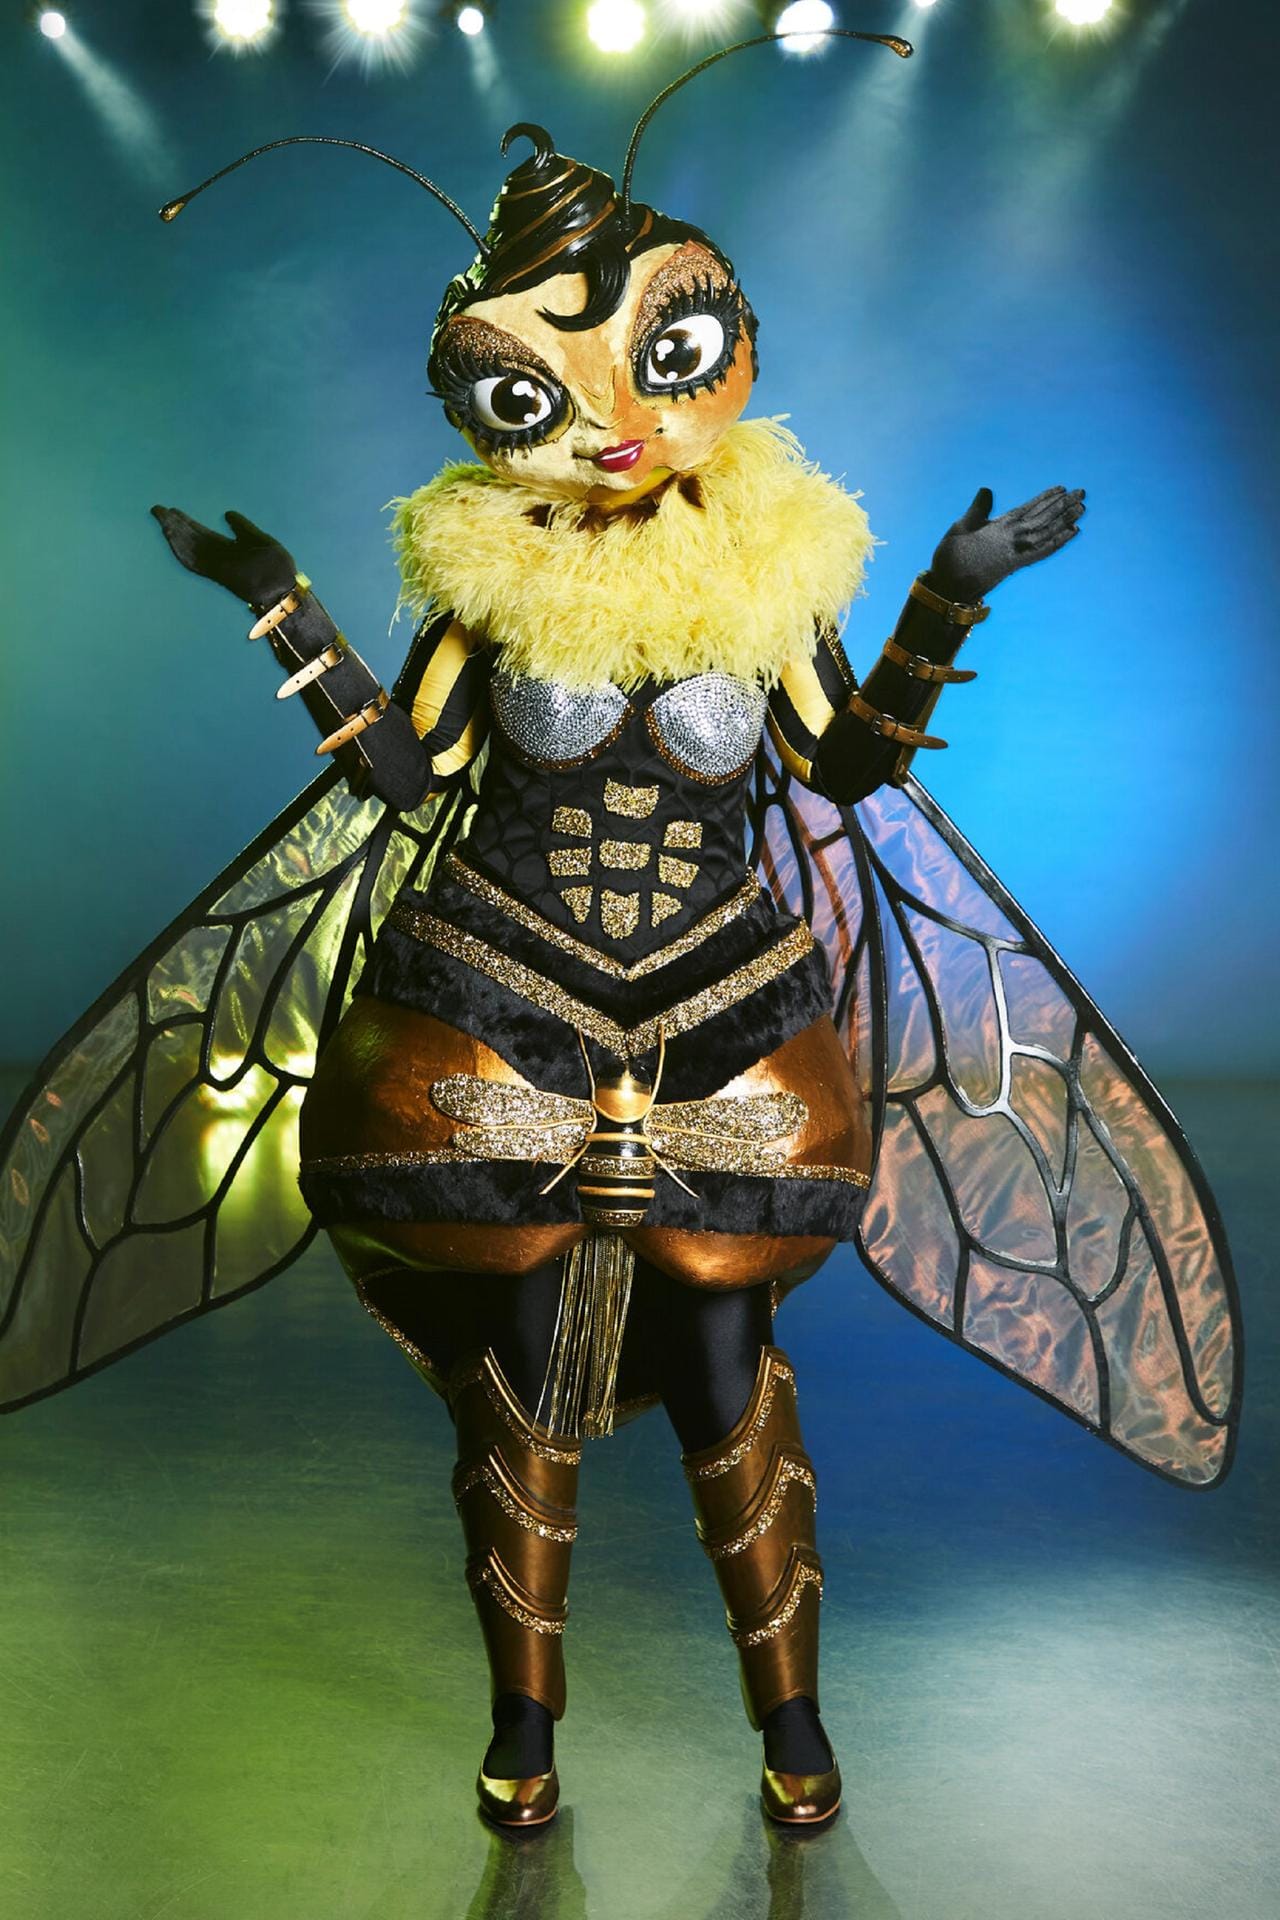 Die Biene: 500 Stunden hat das "The Masked Singer"-Kostüm in Anspruch genommen.